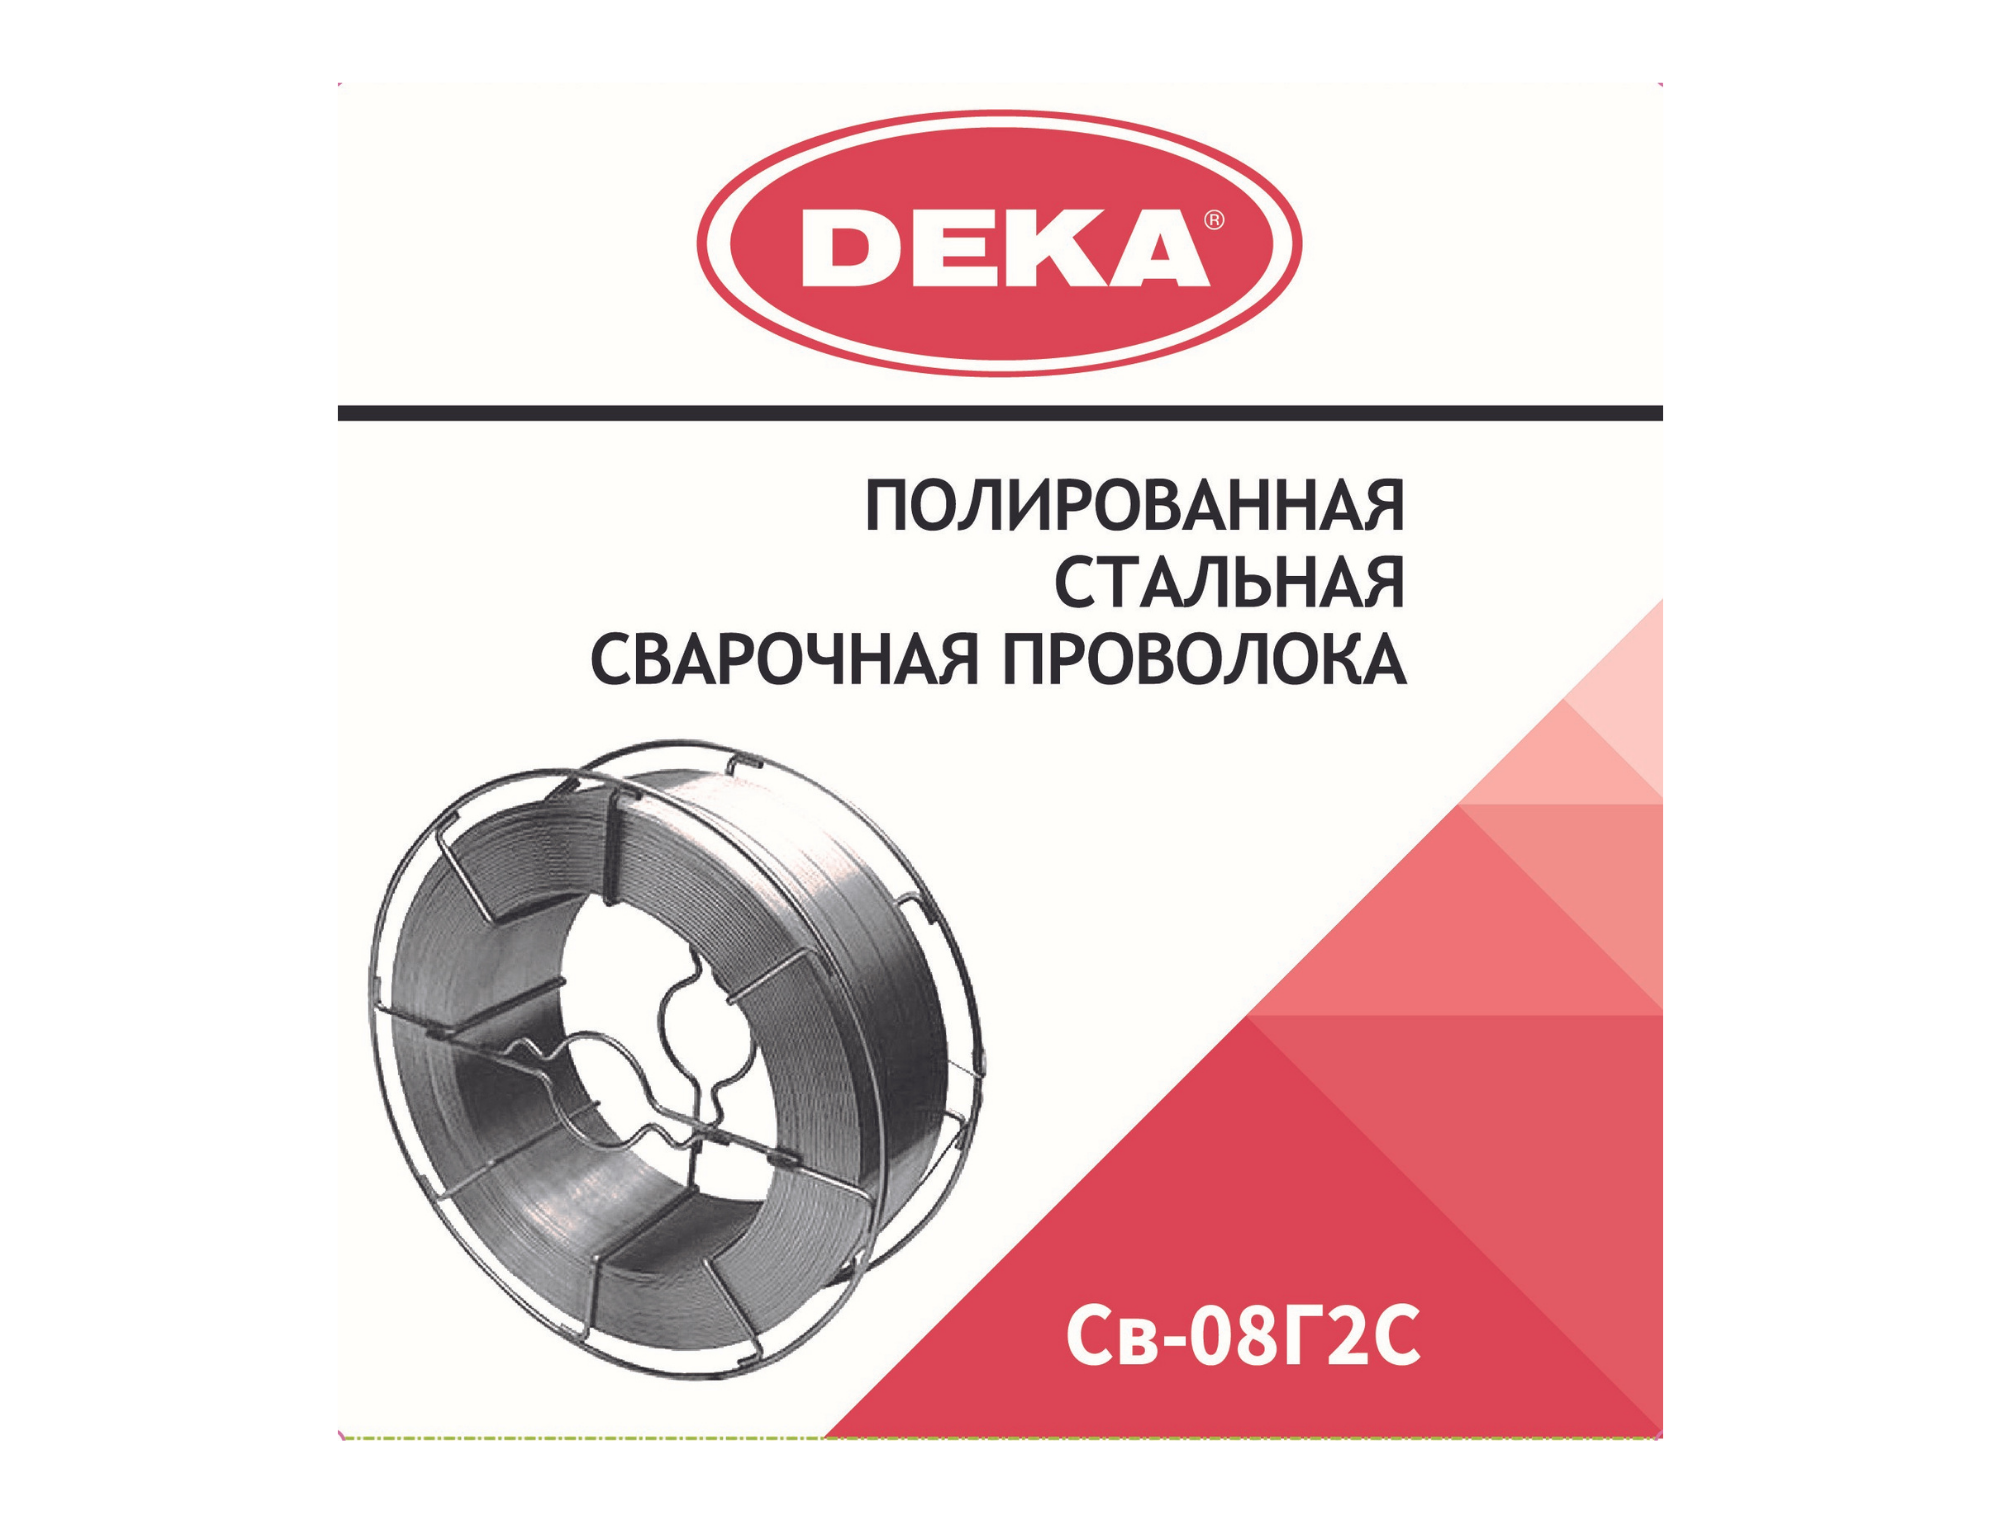 Полированная сварочная проволока DEKA СВ-08Г2С 1,2 мм по 18 кг | DEKA